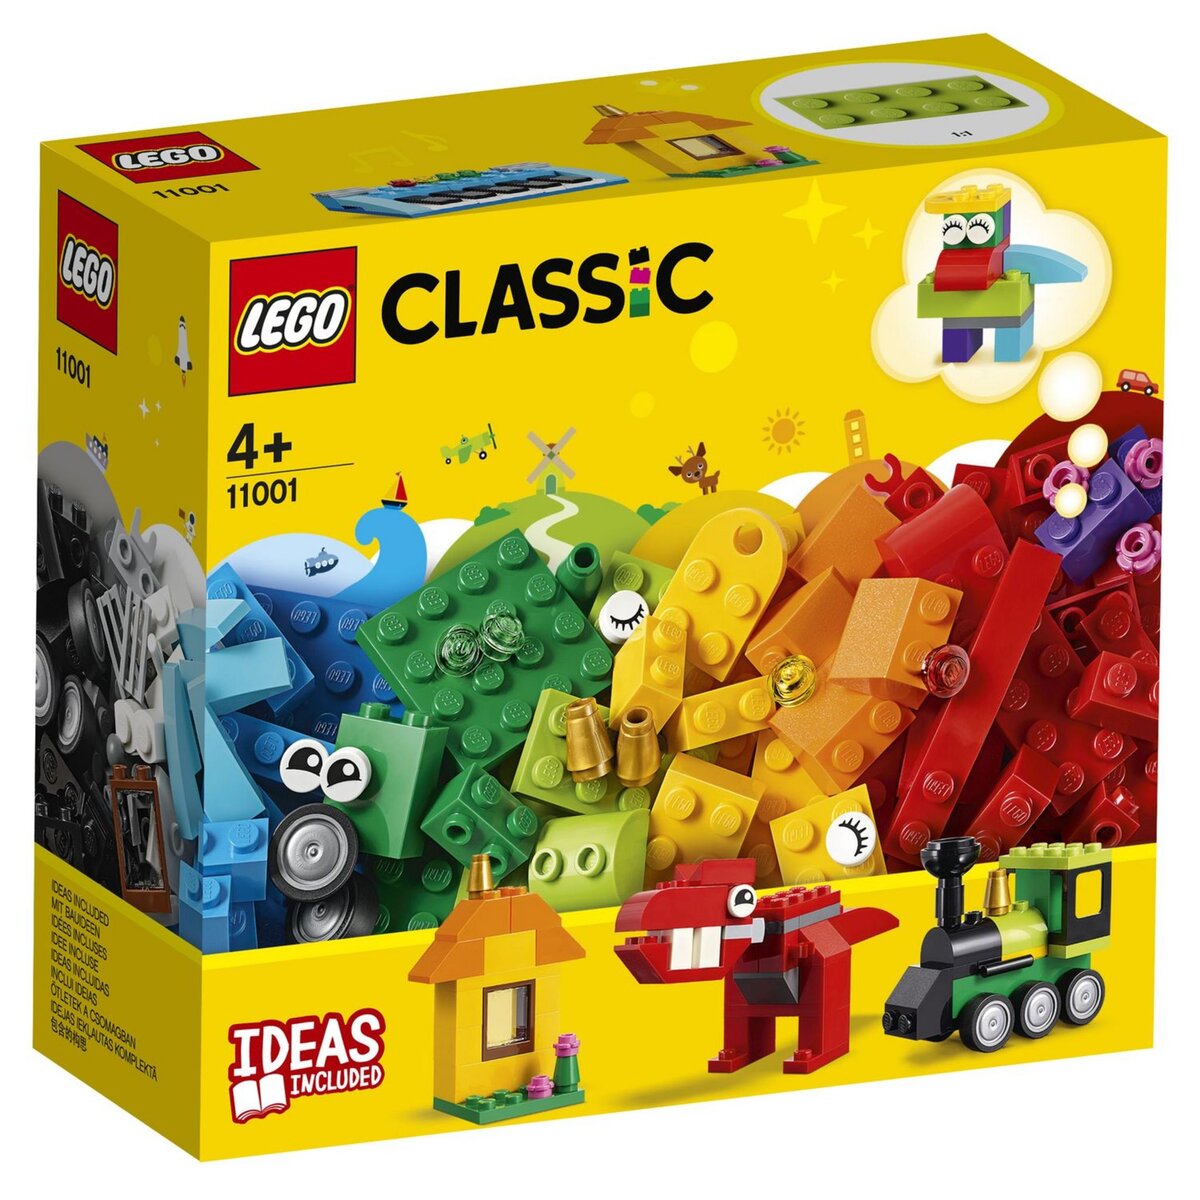 LEGO pas Cher : Où dénicher les meilleures promos ?